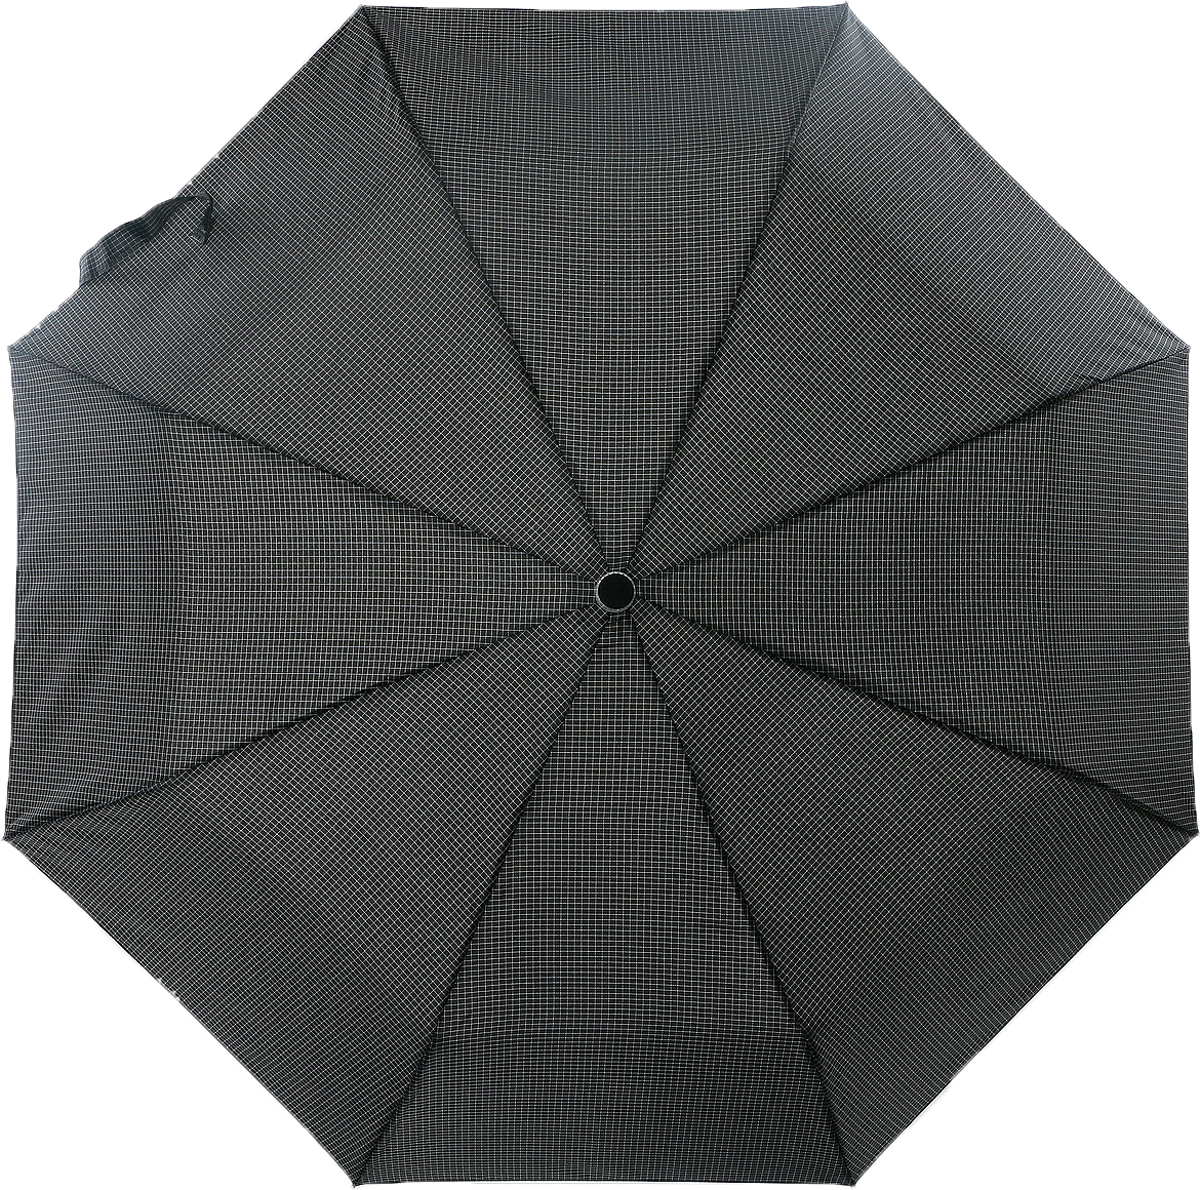 Зонт мужской Magic Rain, автомат, 3 сложения, цвет: черный, белый. 7022-1704